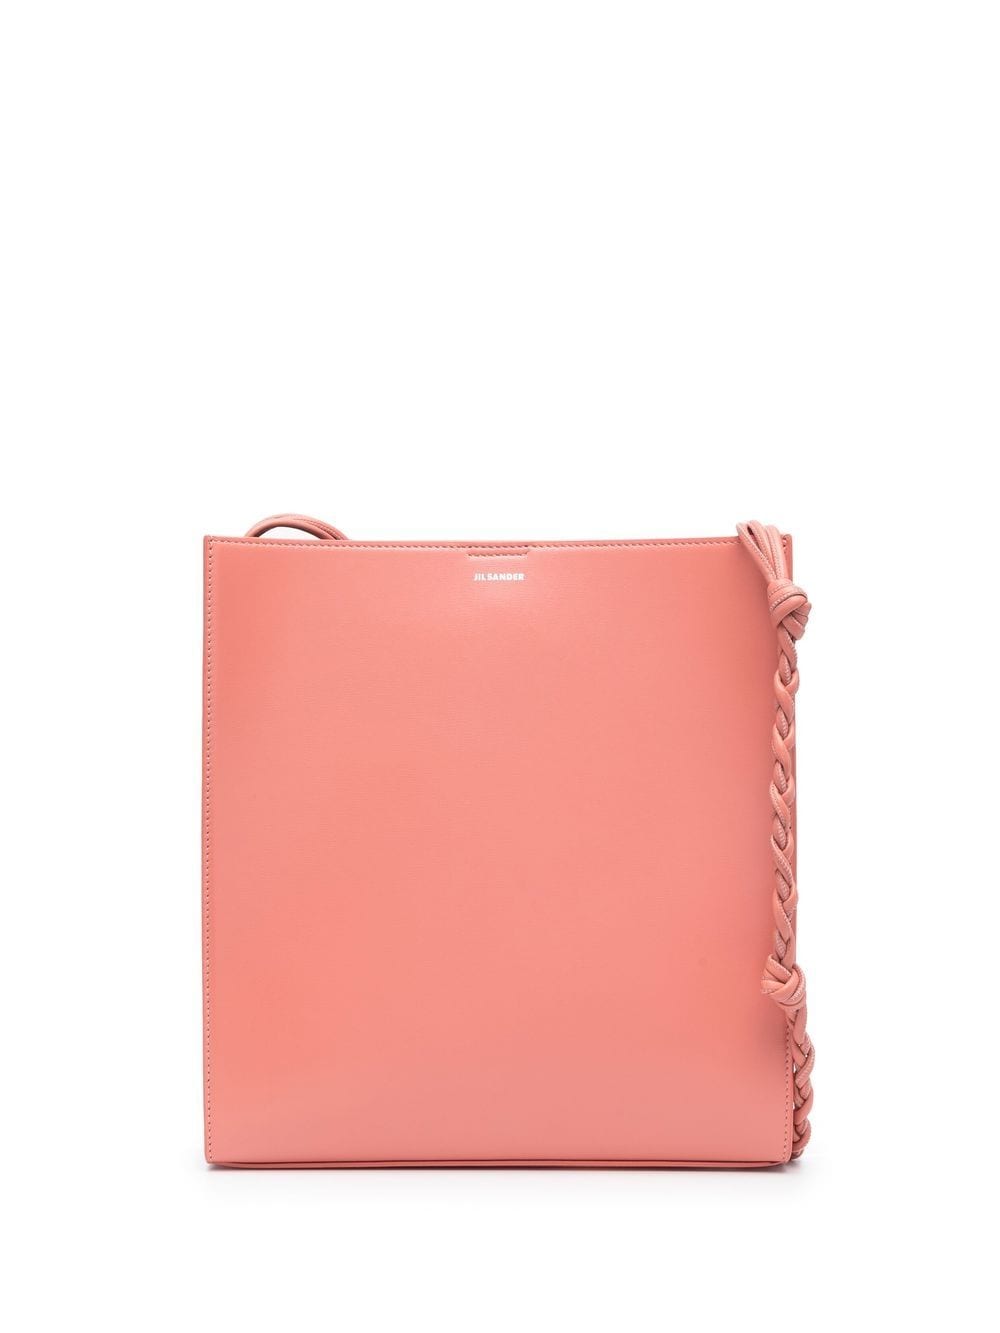 Jil Sander medium Tangle leather shoulder bag - Pink von Jil Sander